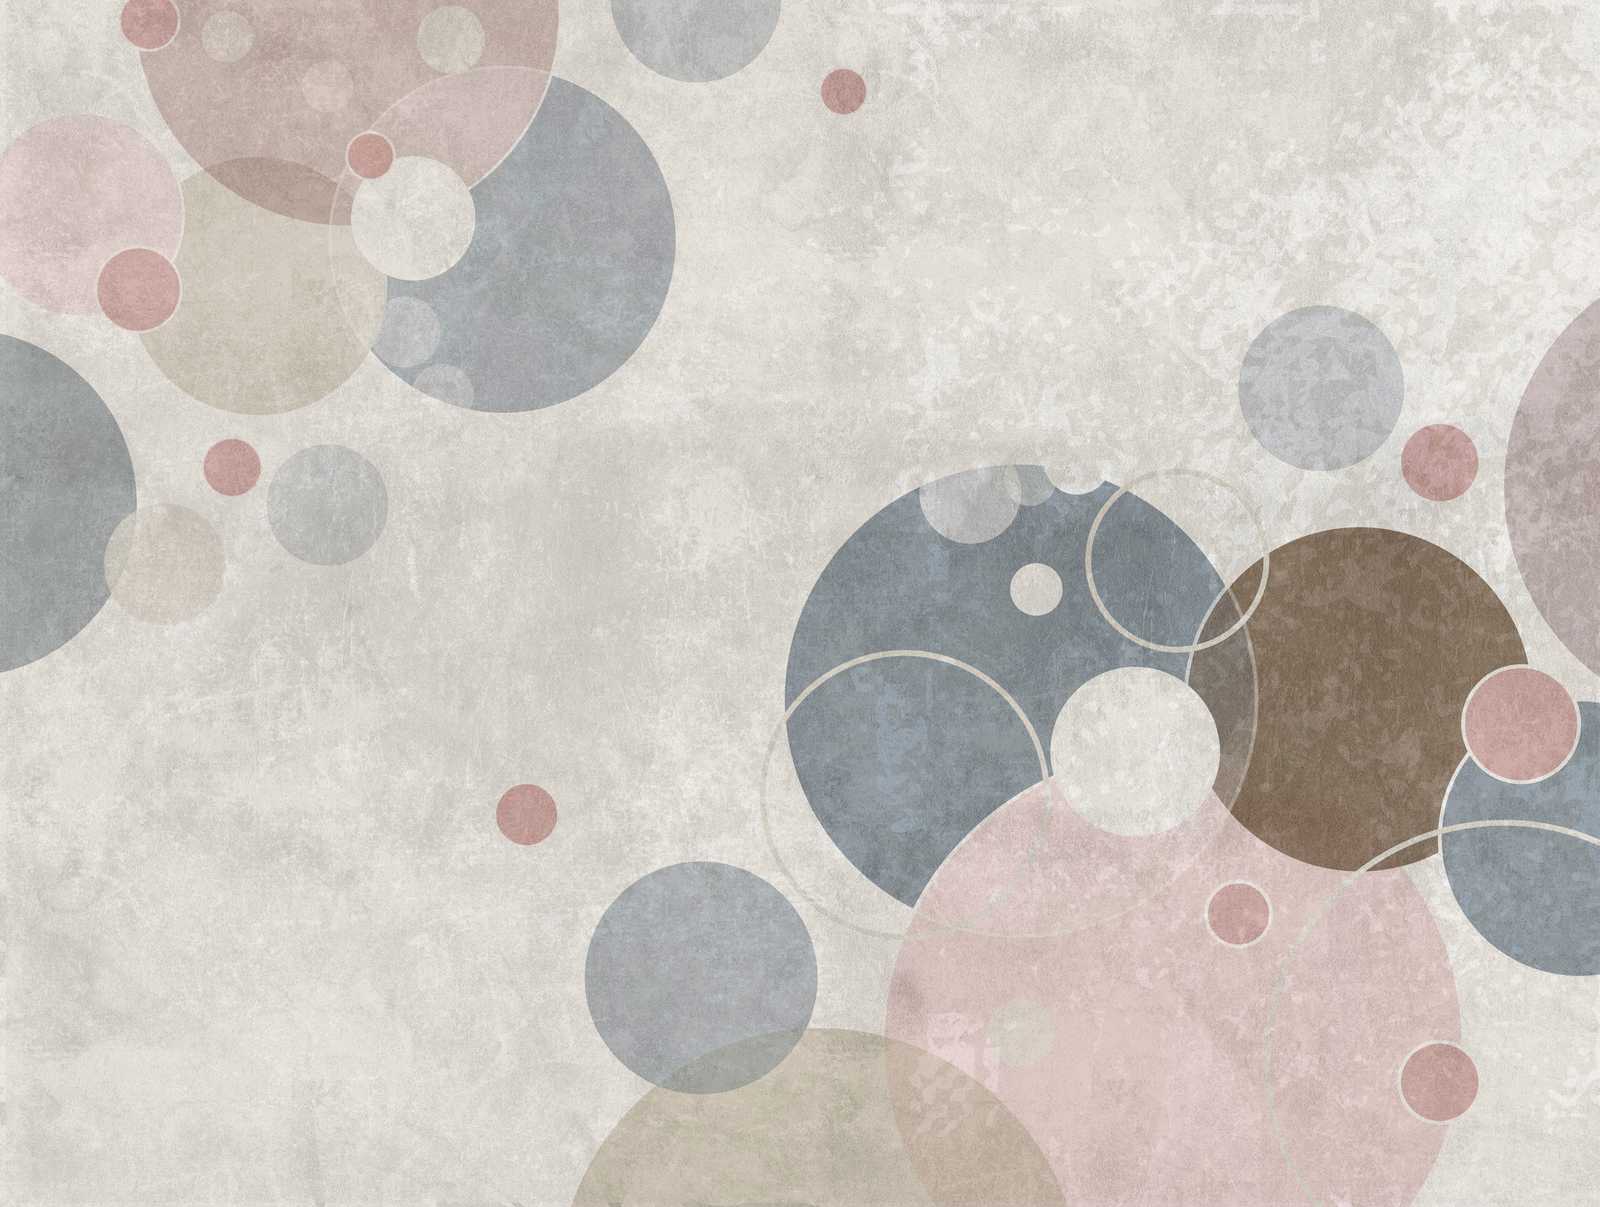             Papel pintado novedad - papel pintado motivo círculo abstracto en diseño moderno
        